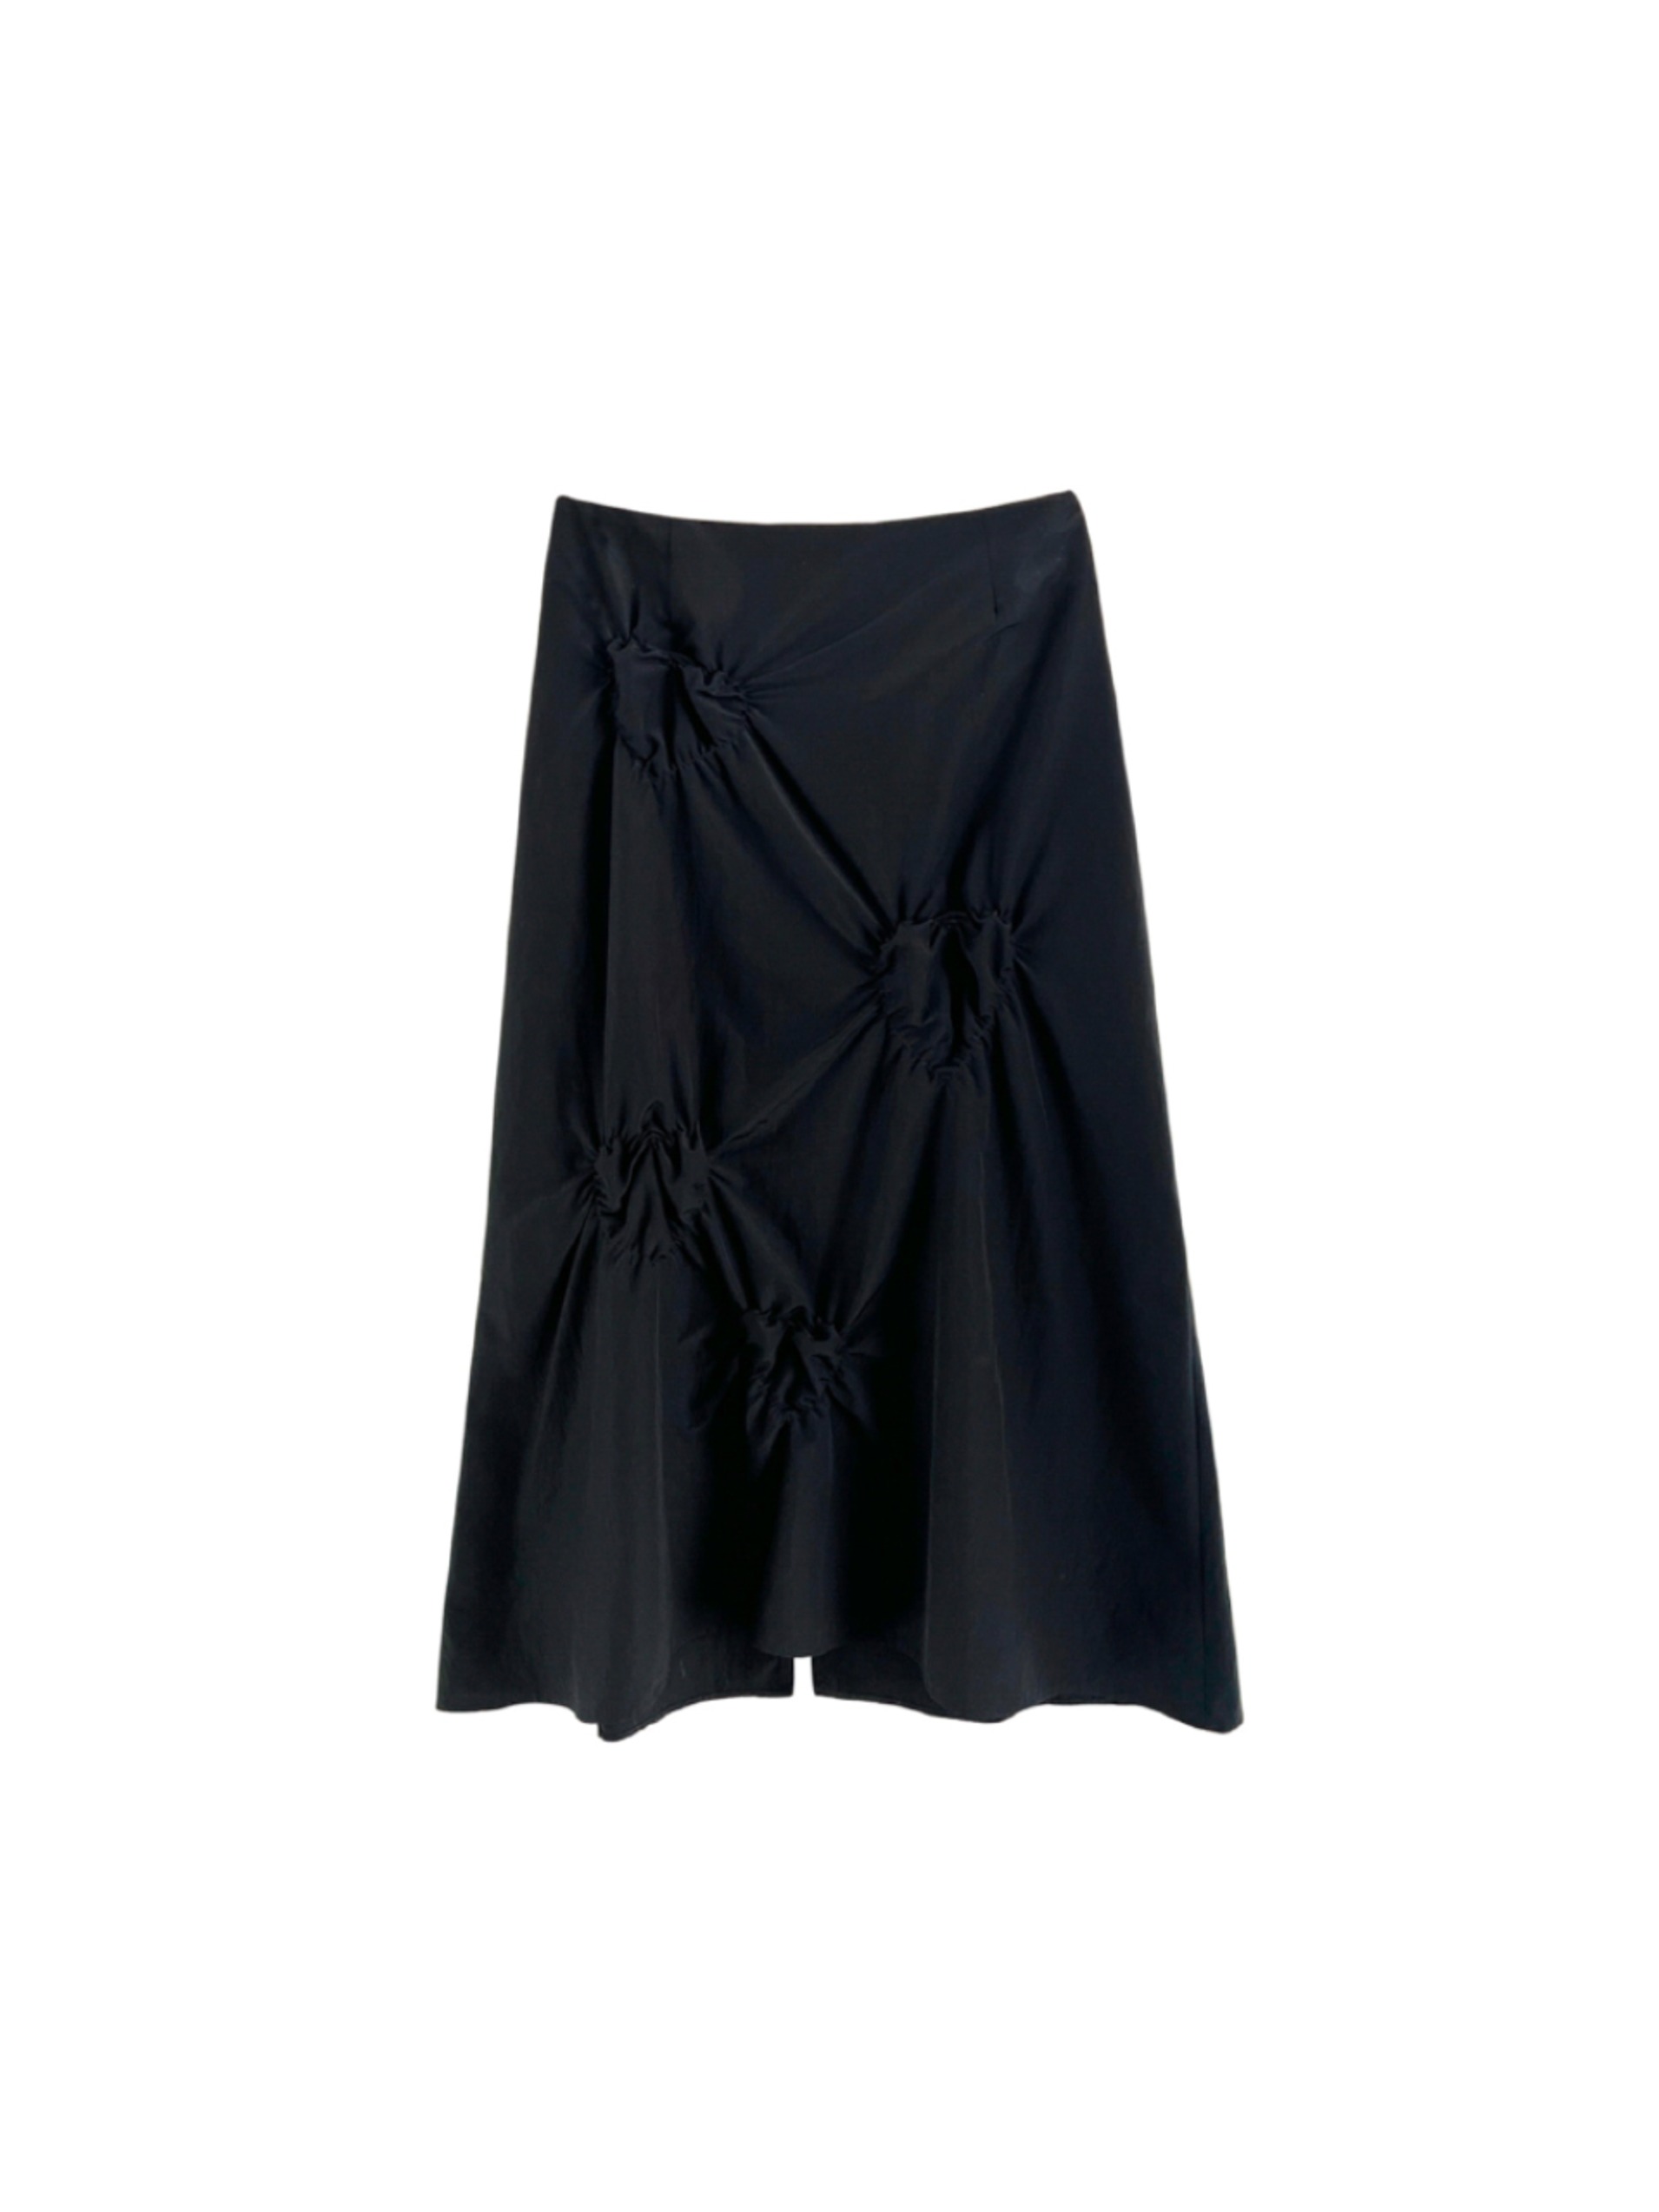 [2차 리오더] For Sunshin Moments Maxi Skirt Black